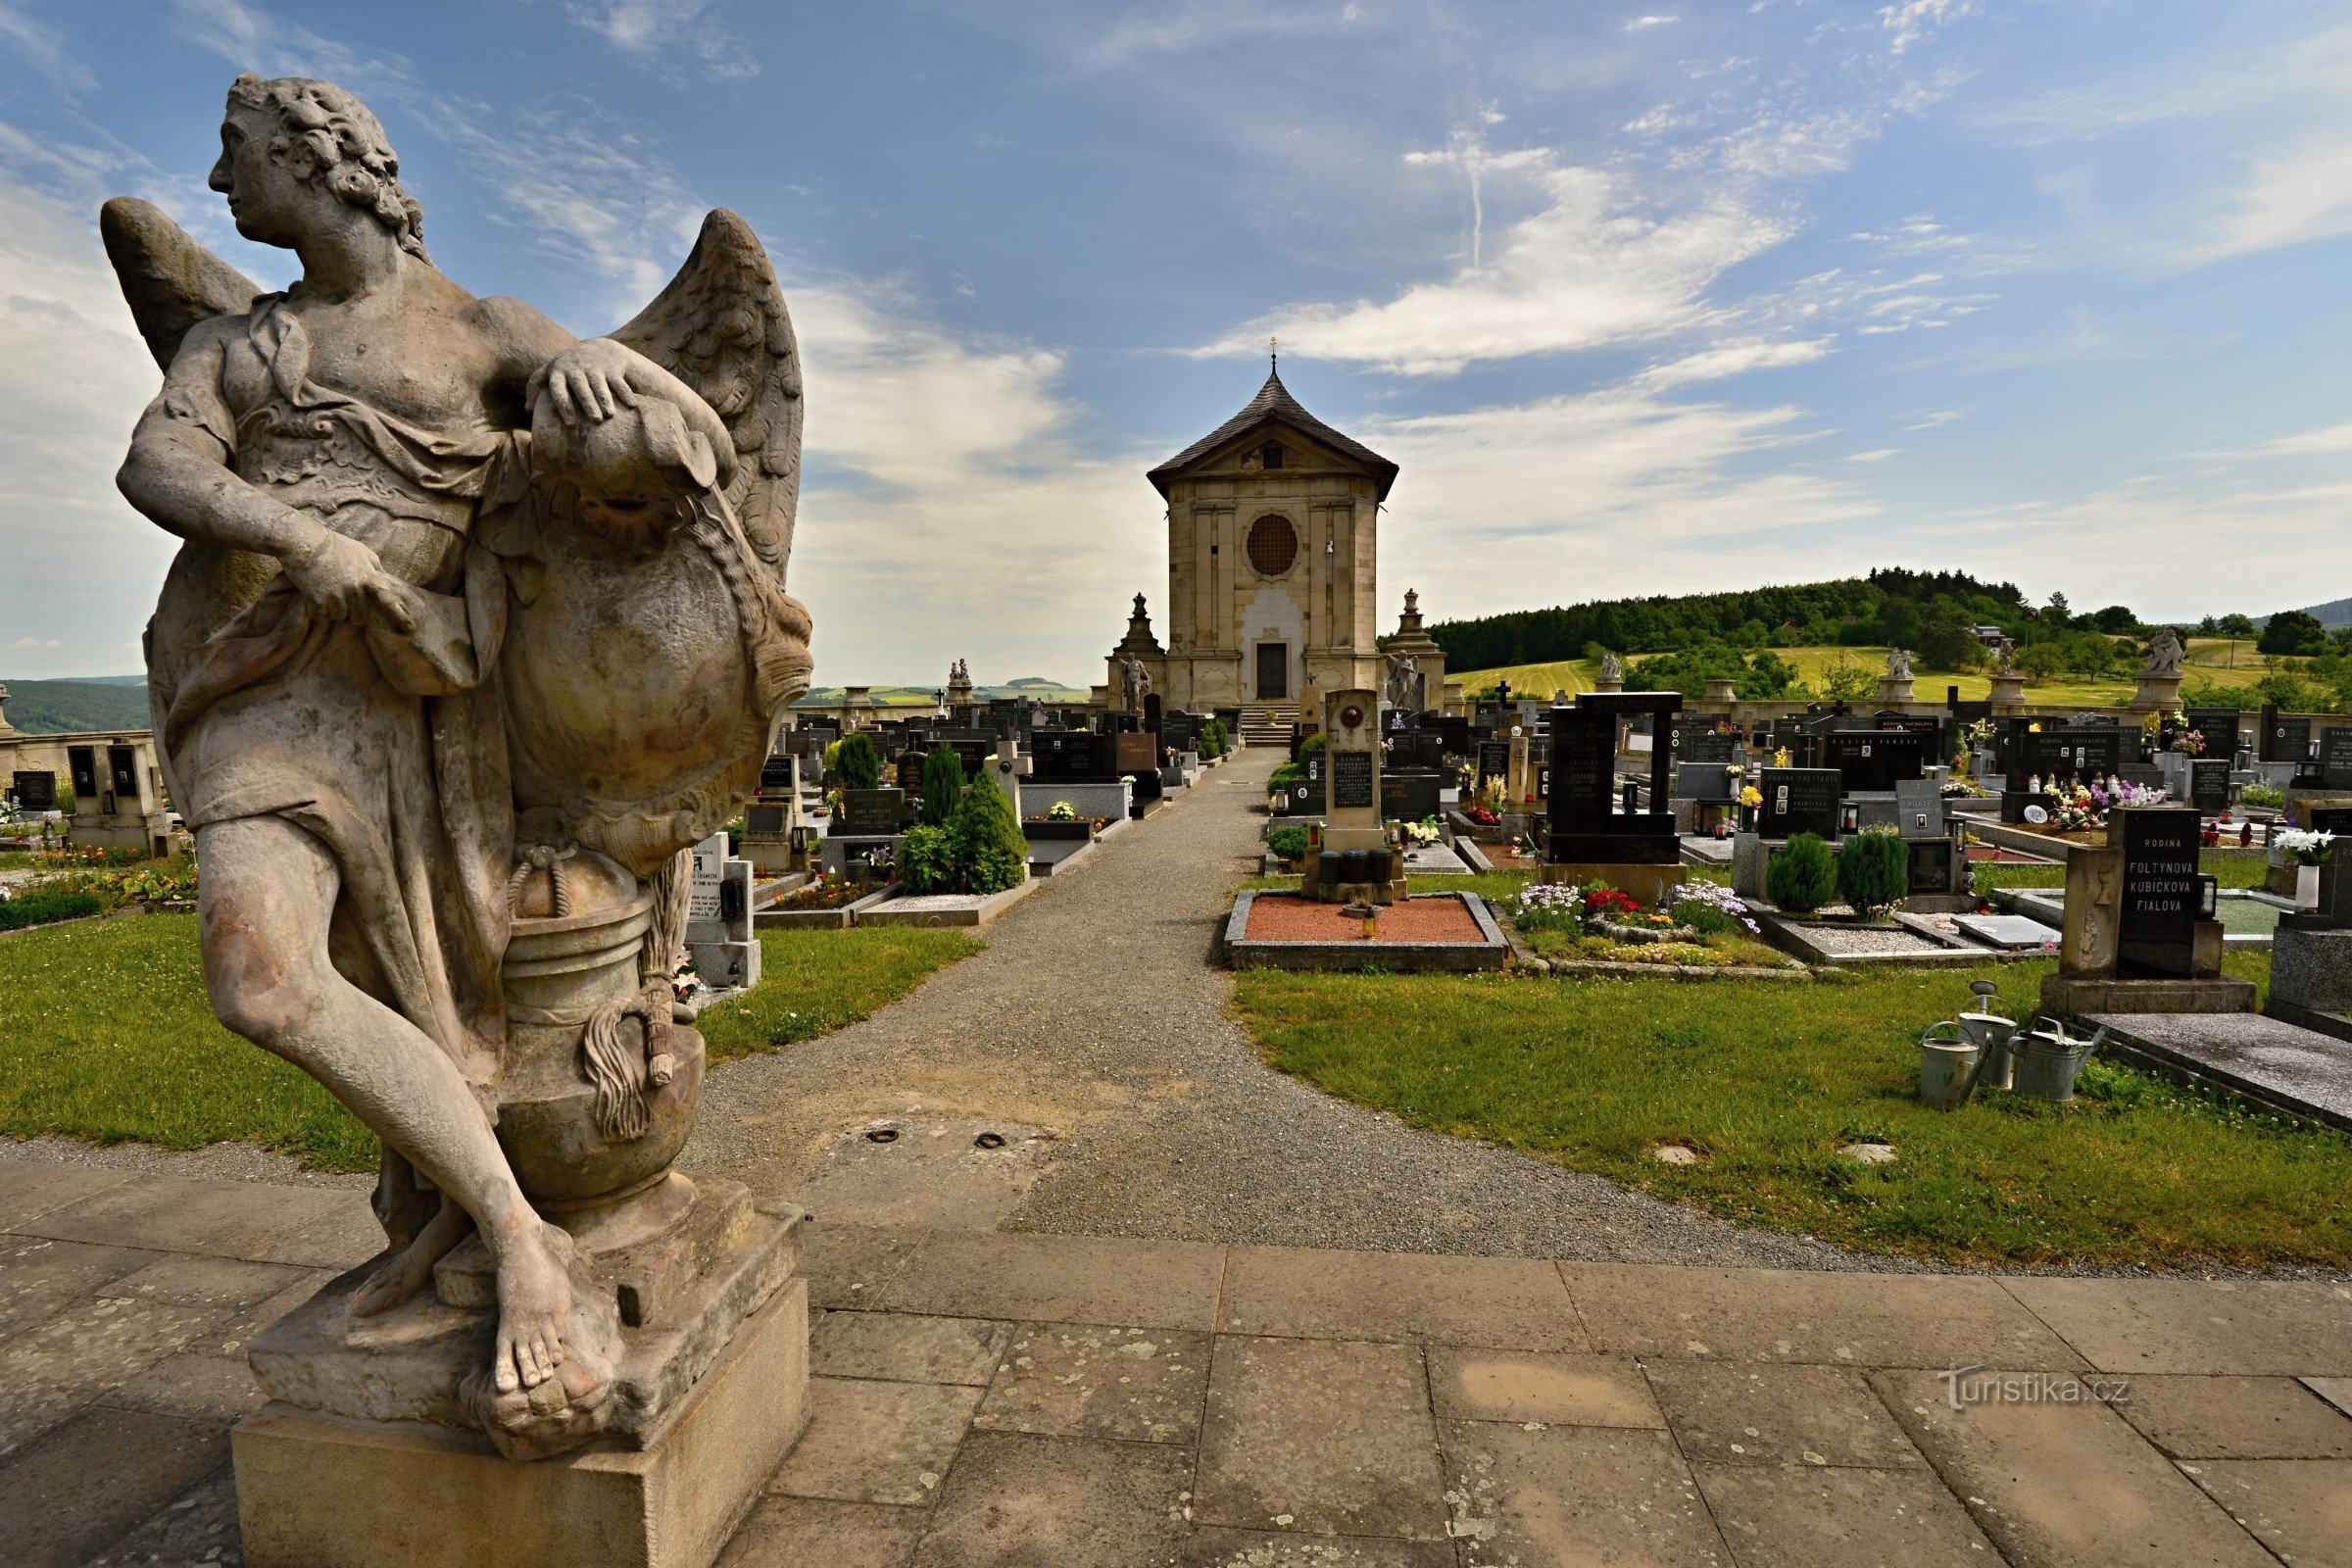 Atiradores: cemitério barroco